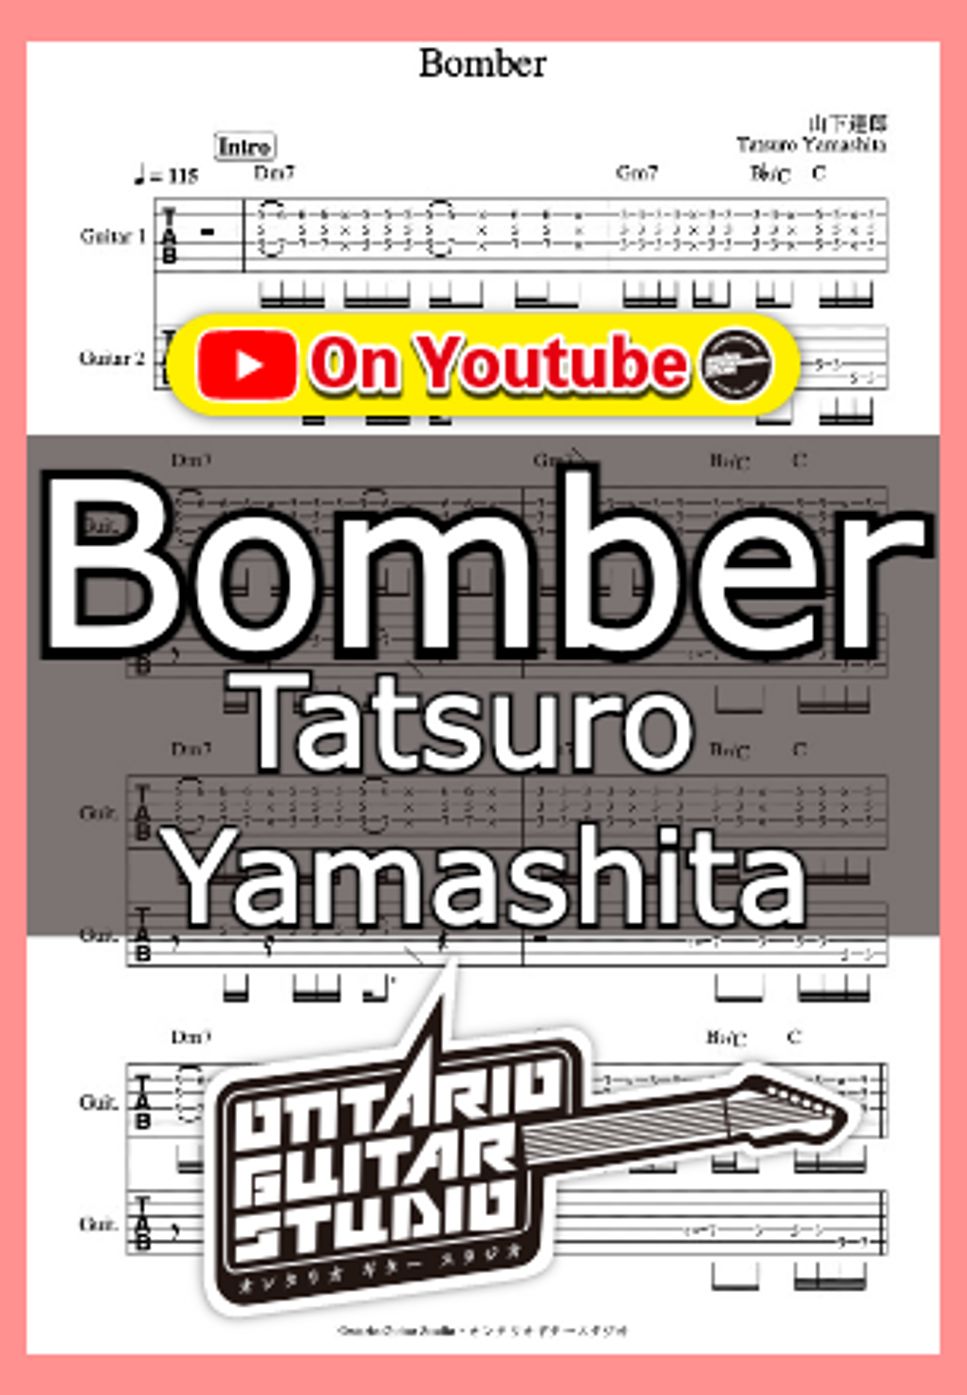 Yamashita Tatsuro - Bomber by Ontario Guitar Studio